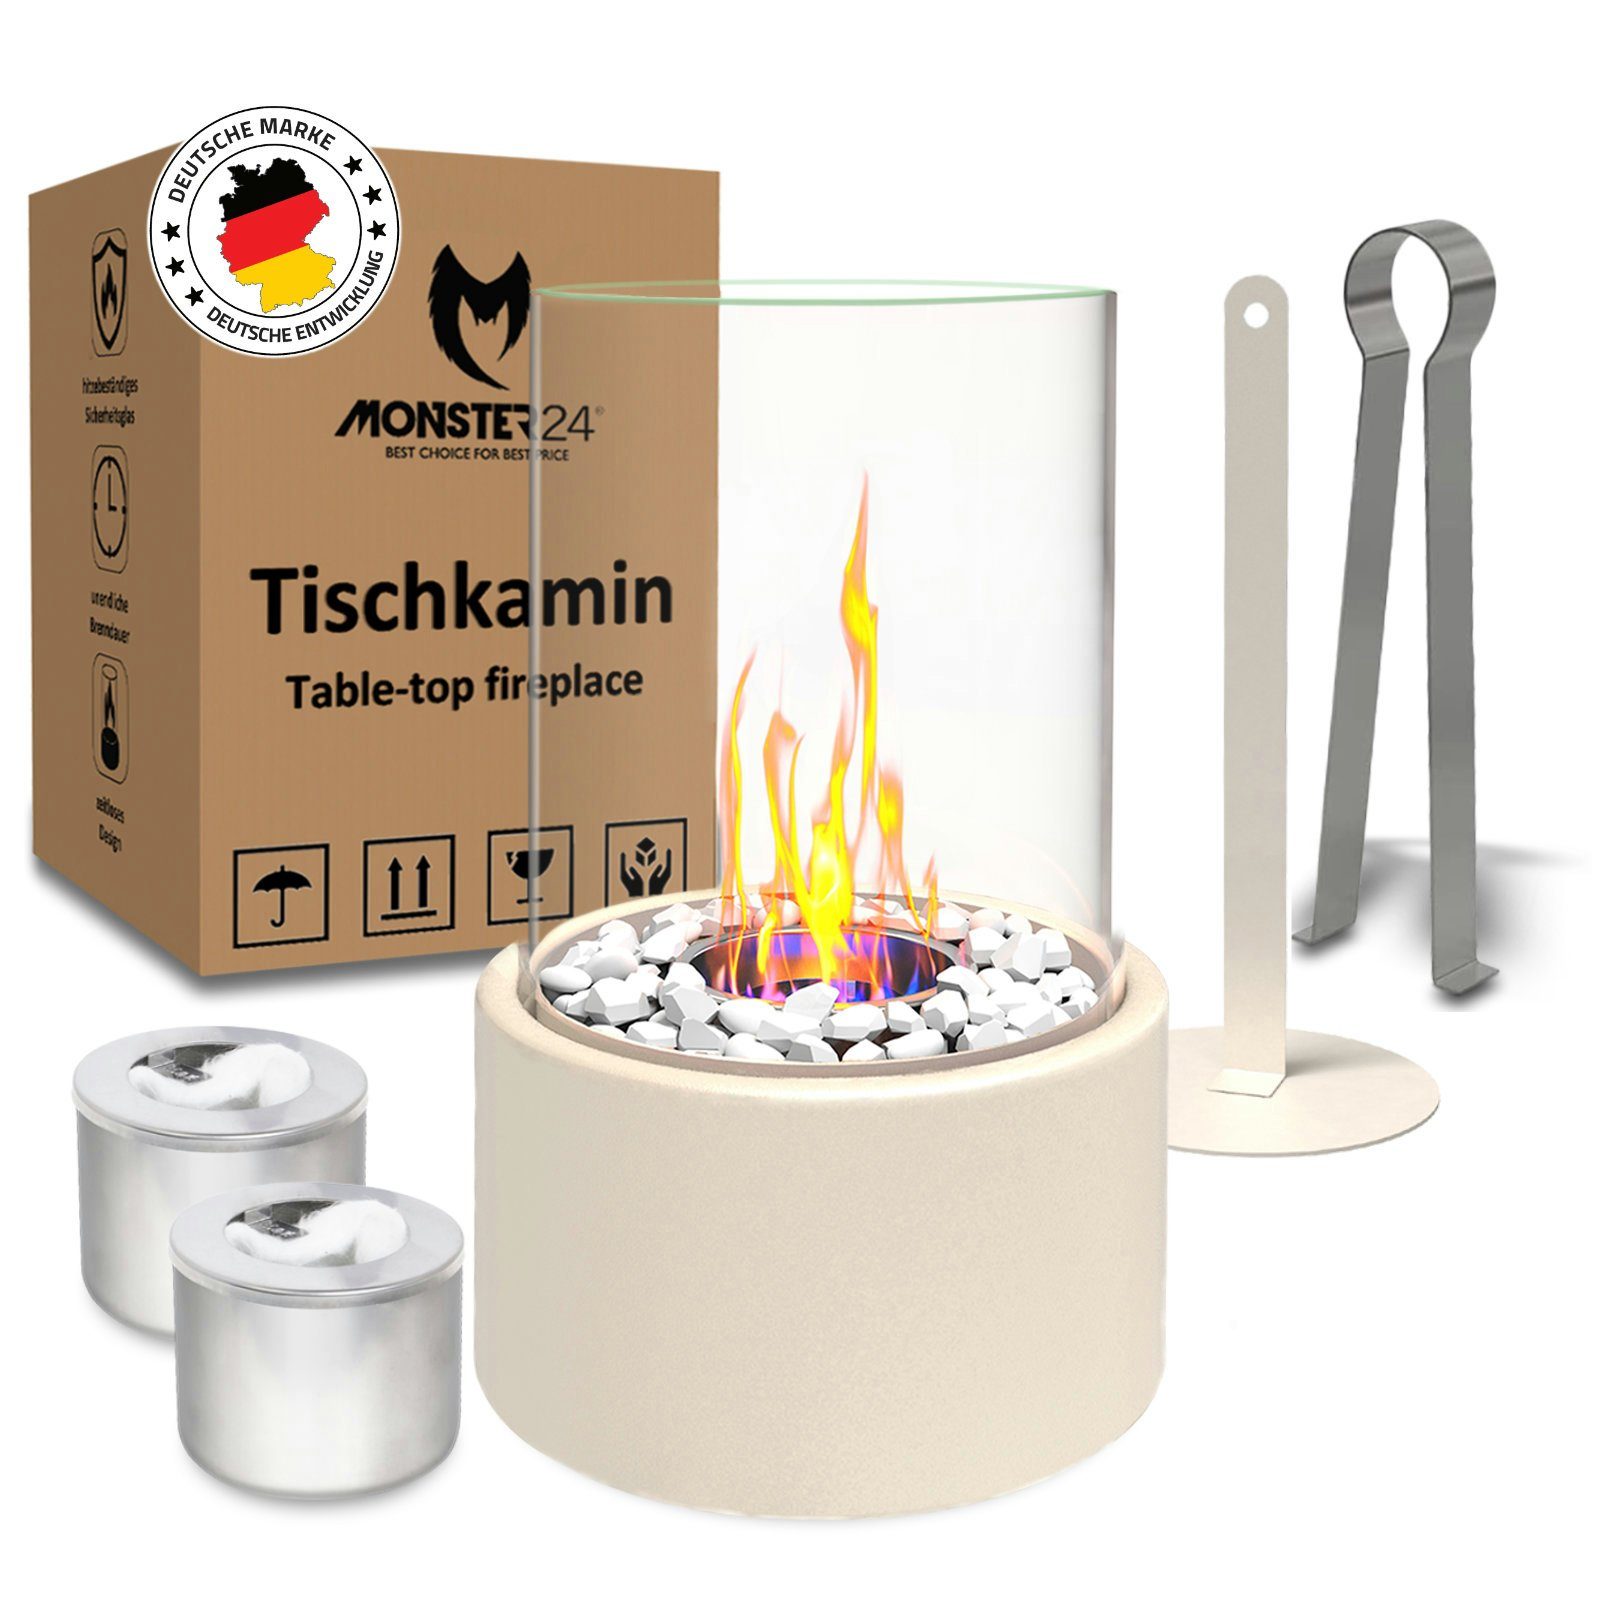 Monster24 Tischfeuer Bio-Ethanol Tischkamin für Indoor & Outdoor, Echtfeuer-Dekokamin (Höhe 26 cm / Durchmesser 16 cm) Creme